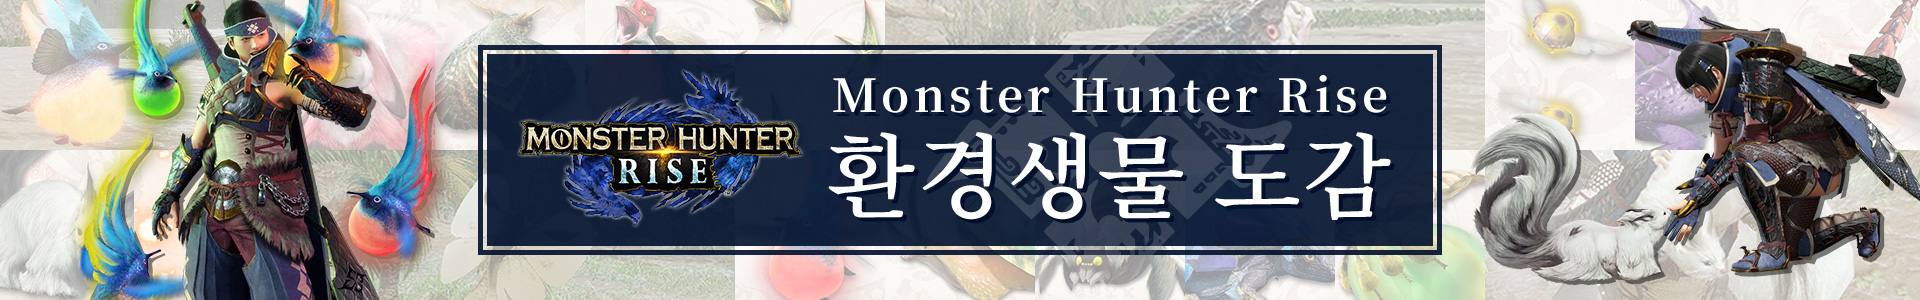 『Monster Hunter Rise』 환경생물 도감